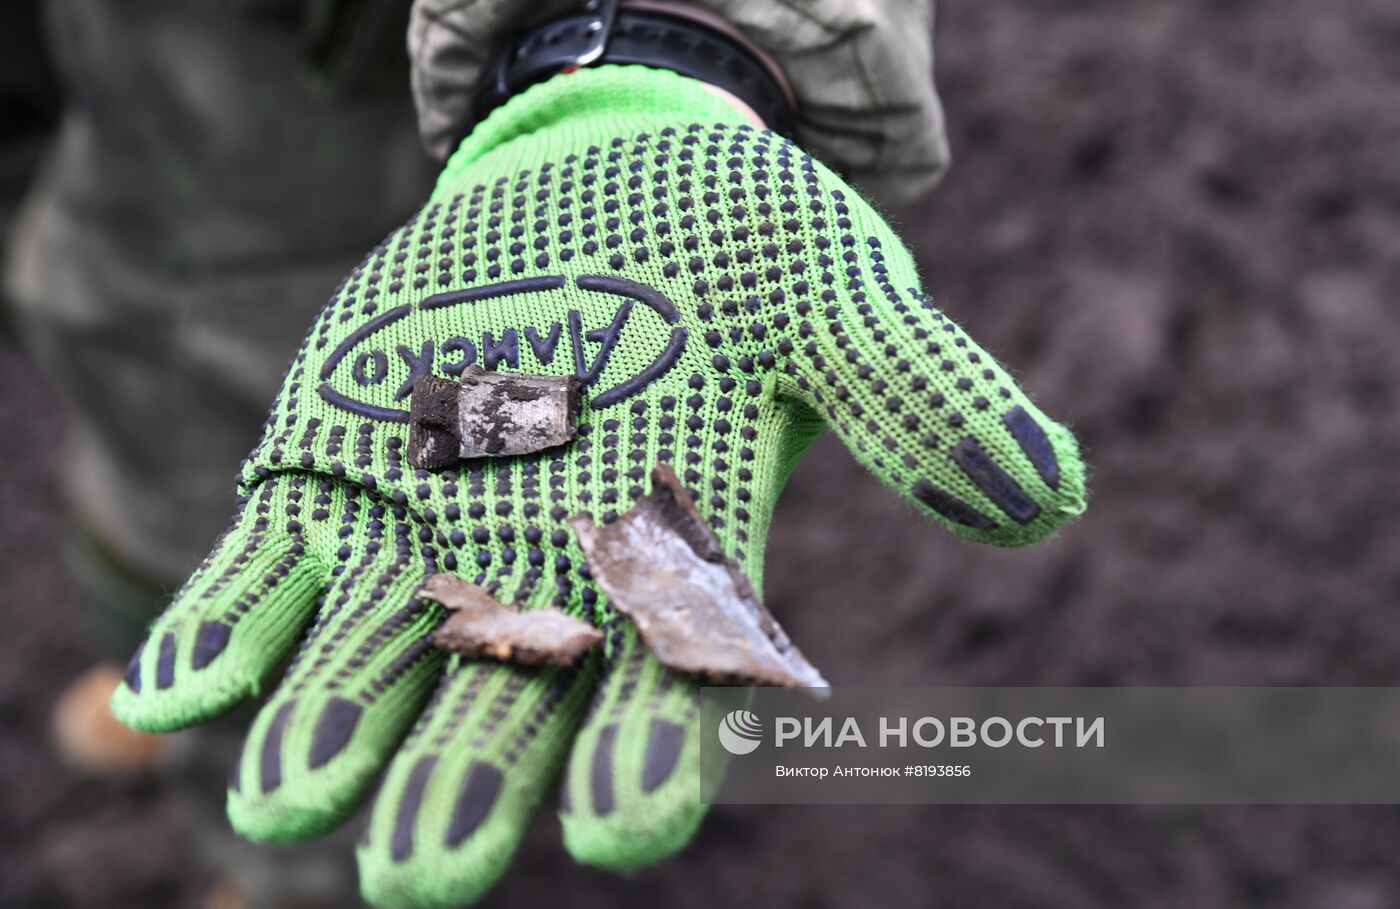 Работа саперов МВД ЛНР на освобожденных территориях в Харьковской области